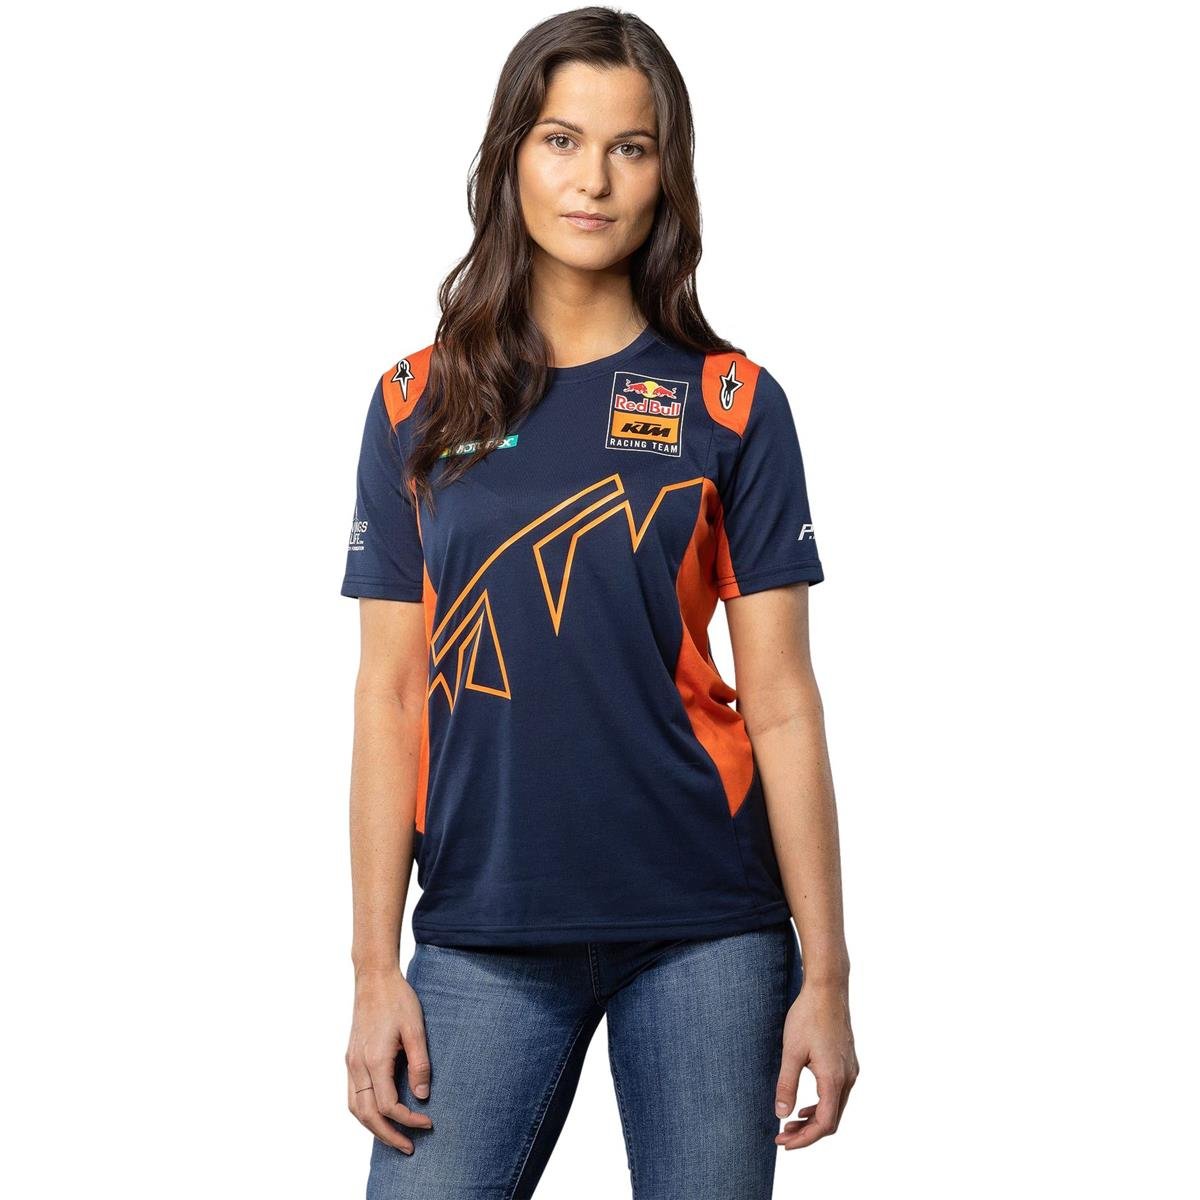 Red Bull Femme T-Shirt KTM Official Teamline Navy/Orange